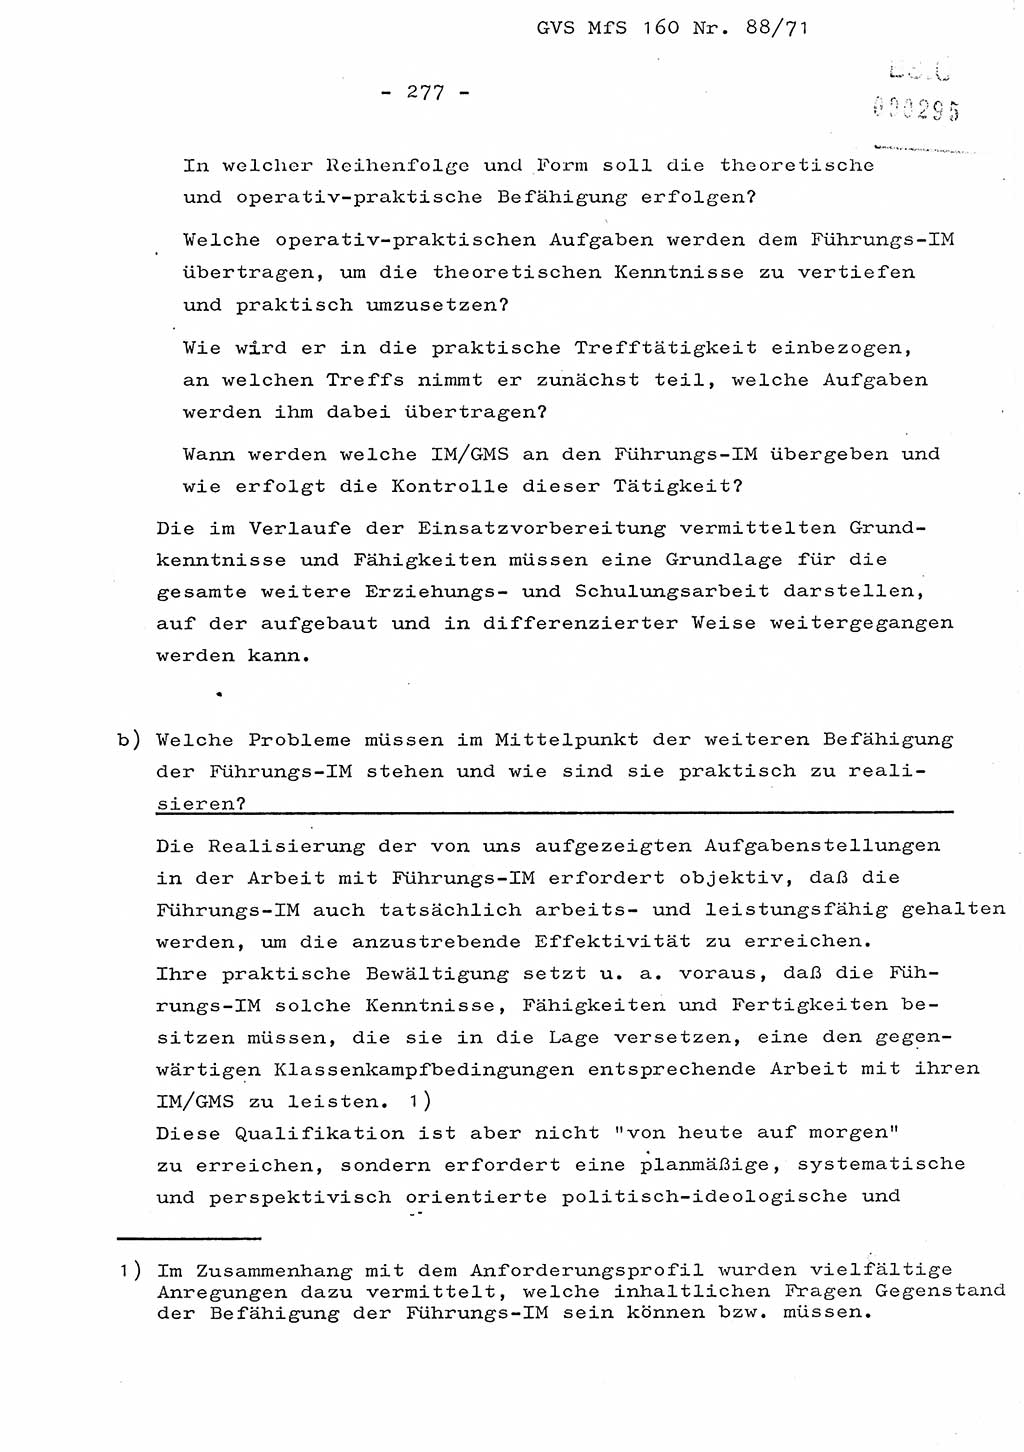 Dissertation Oberstleutnant Josef Schwarz (BV Schwerin), Major Fritz Amm (JHS), Hauptmann Peter Gräßler (JHS), Ministerium für Staatssicherheit (MfS) [Deutsche Demokratische Republik (DDR)], Juristische Hochschule (JHS), Geheime Verschlußsache (GVS) 160-88/71, Potsdam 1972, Seite 277 (Diss. MfS DDR JHS GVS 160-88/71 1972, S. 277)